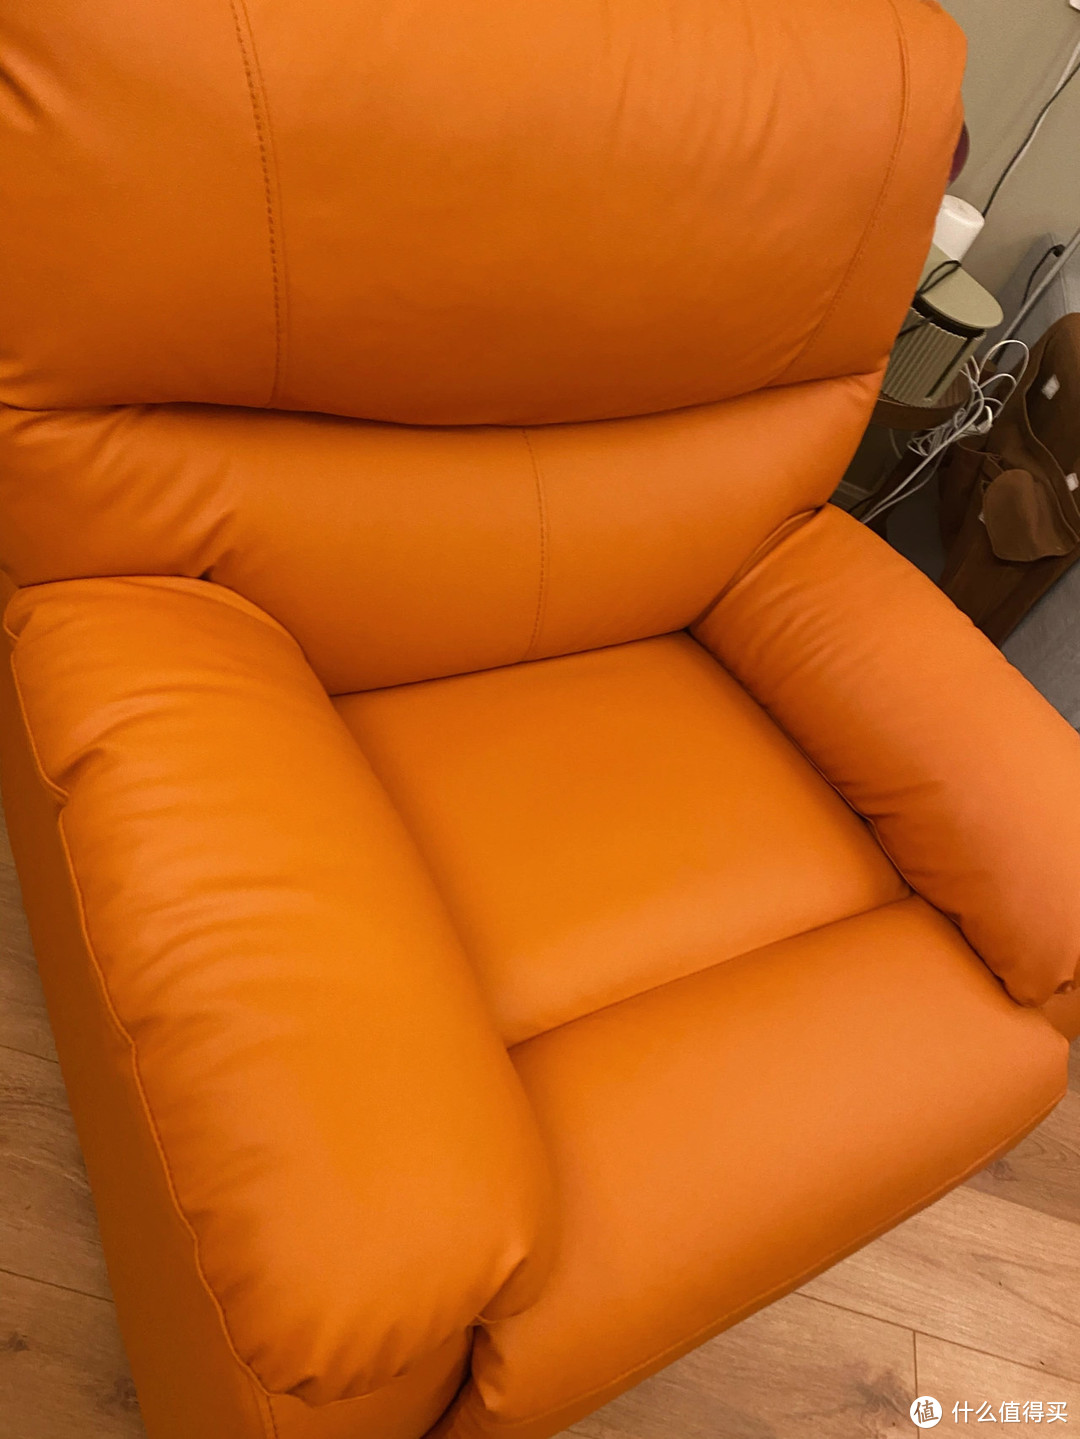 芝华仕沙发值得购买吗？什么样的风格适合呢？？？